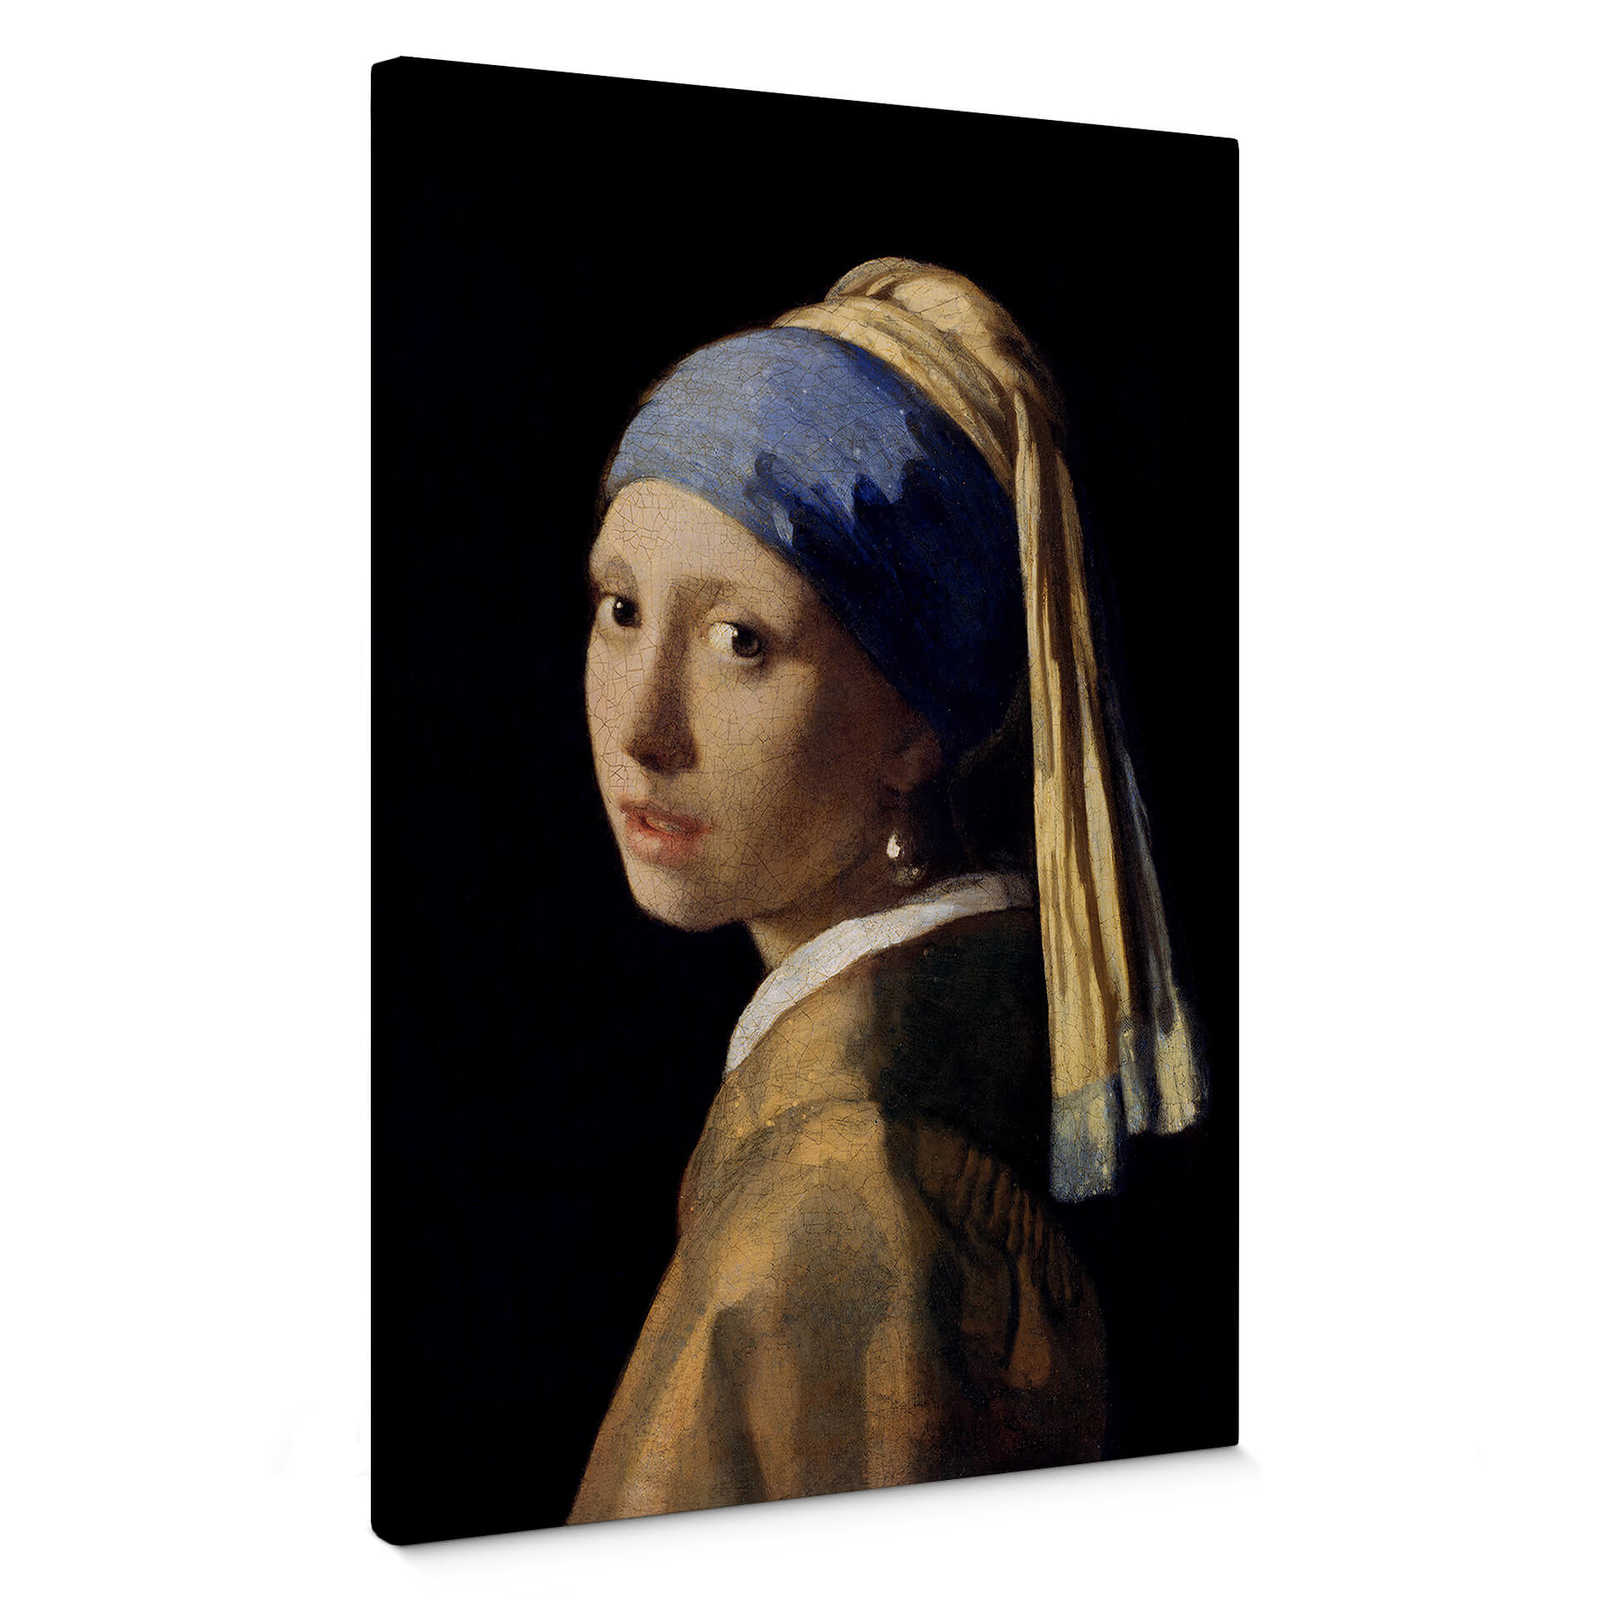 Leinwandbild "Das Mädchen mit dem Perlenohrring" von Dürer – 0,50 m x 0,70 m
